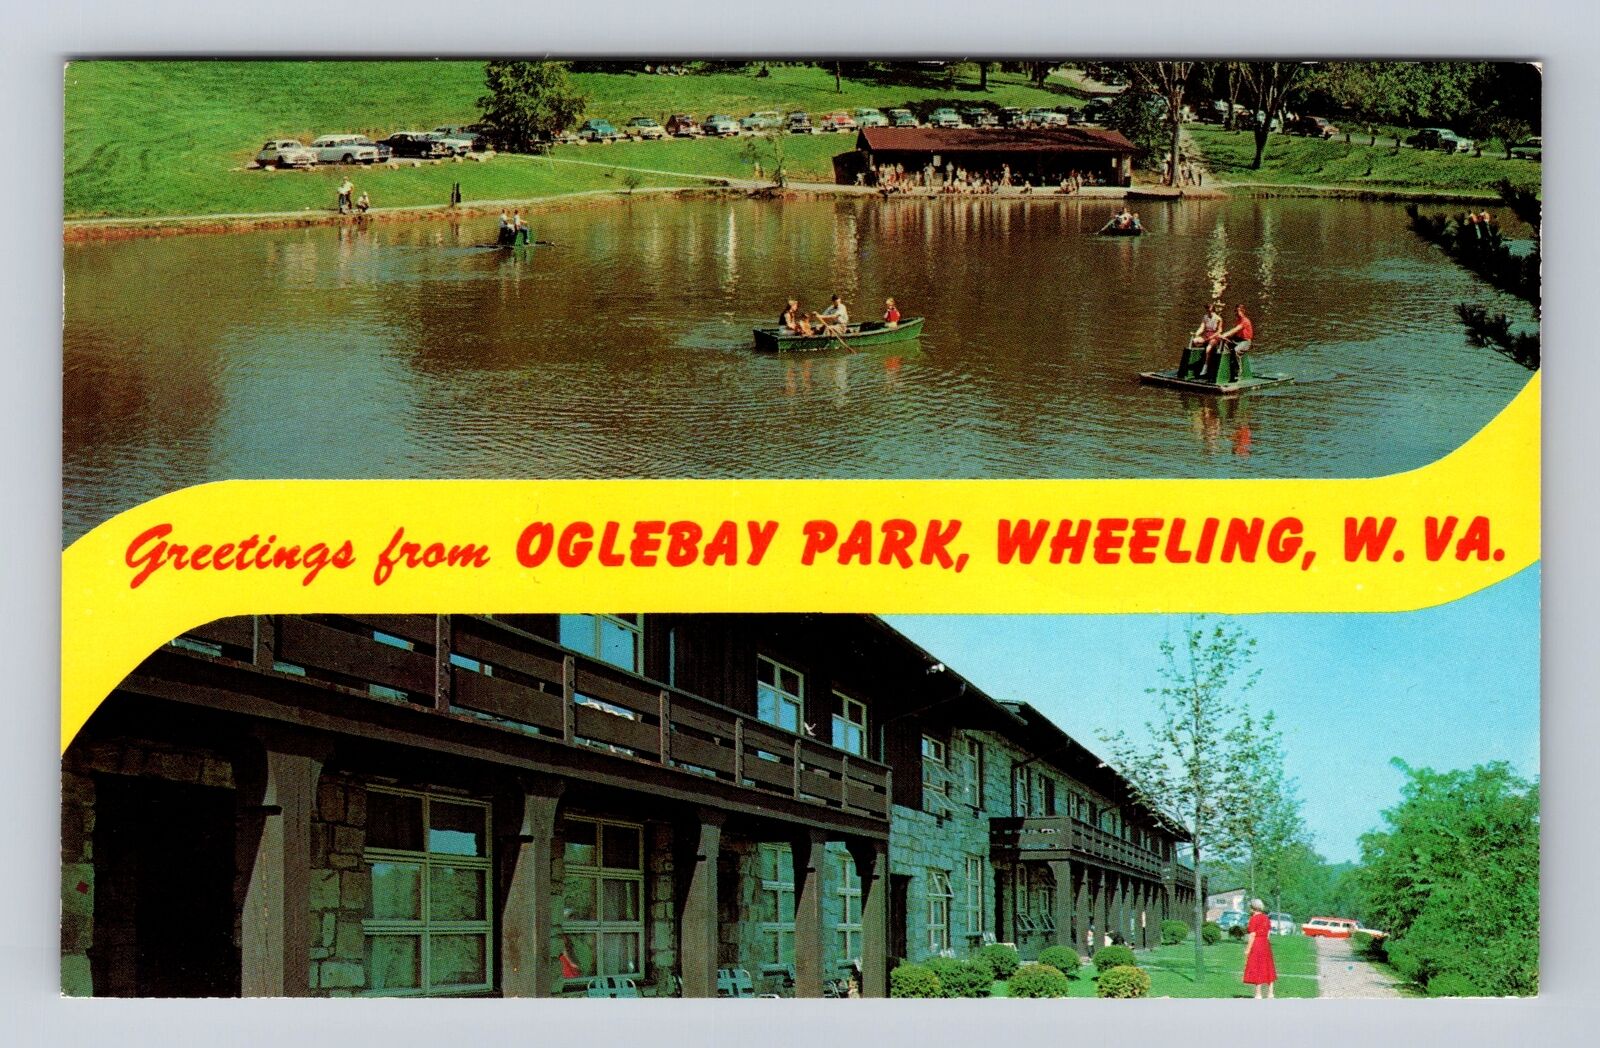 Wheeling WV-West Virginia, General Banner Greeting Oglebay Park Vintage Postcard